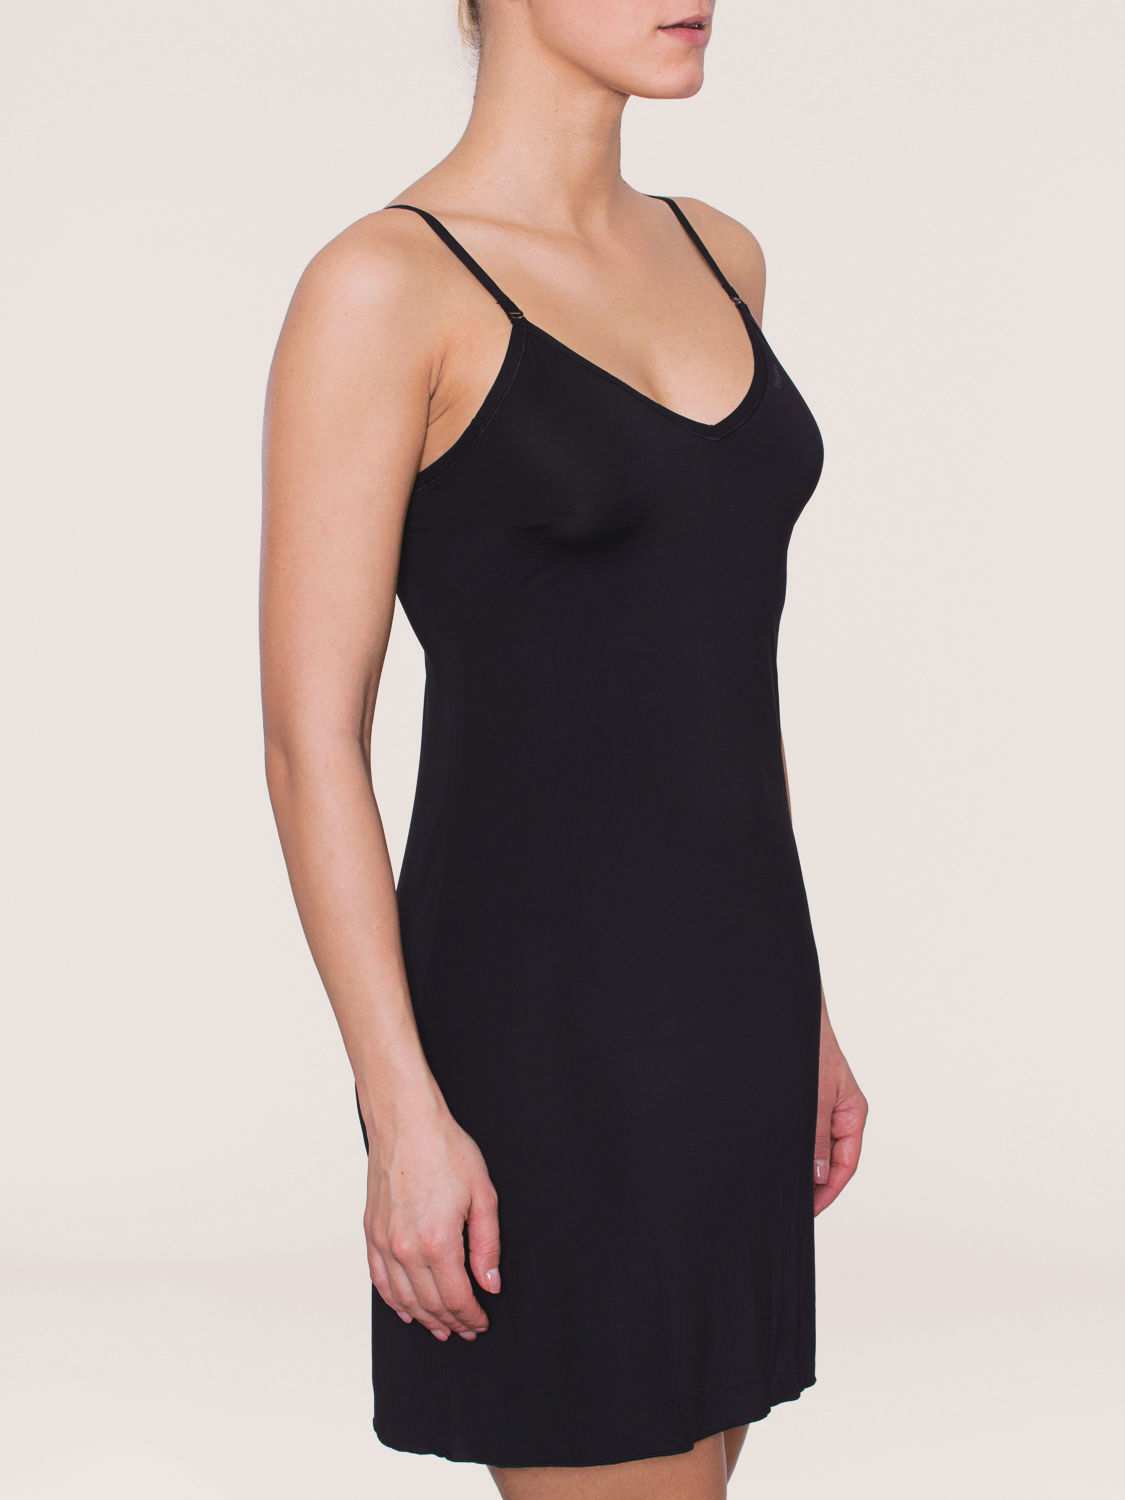 Calamiteit Leger opwinding Triumph Body Make-Up Dress 01+Unterkleid+schwarz 10133684 online bestellen  bei Herzog